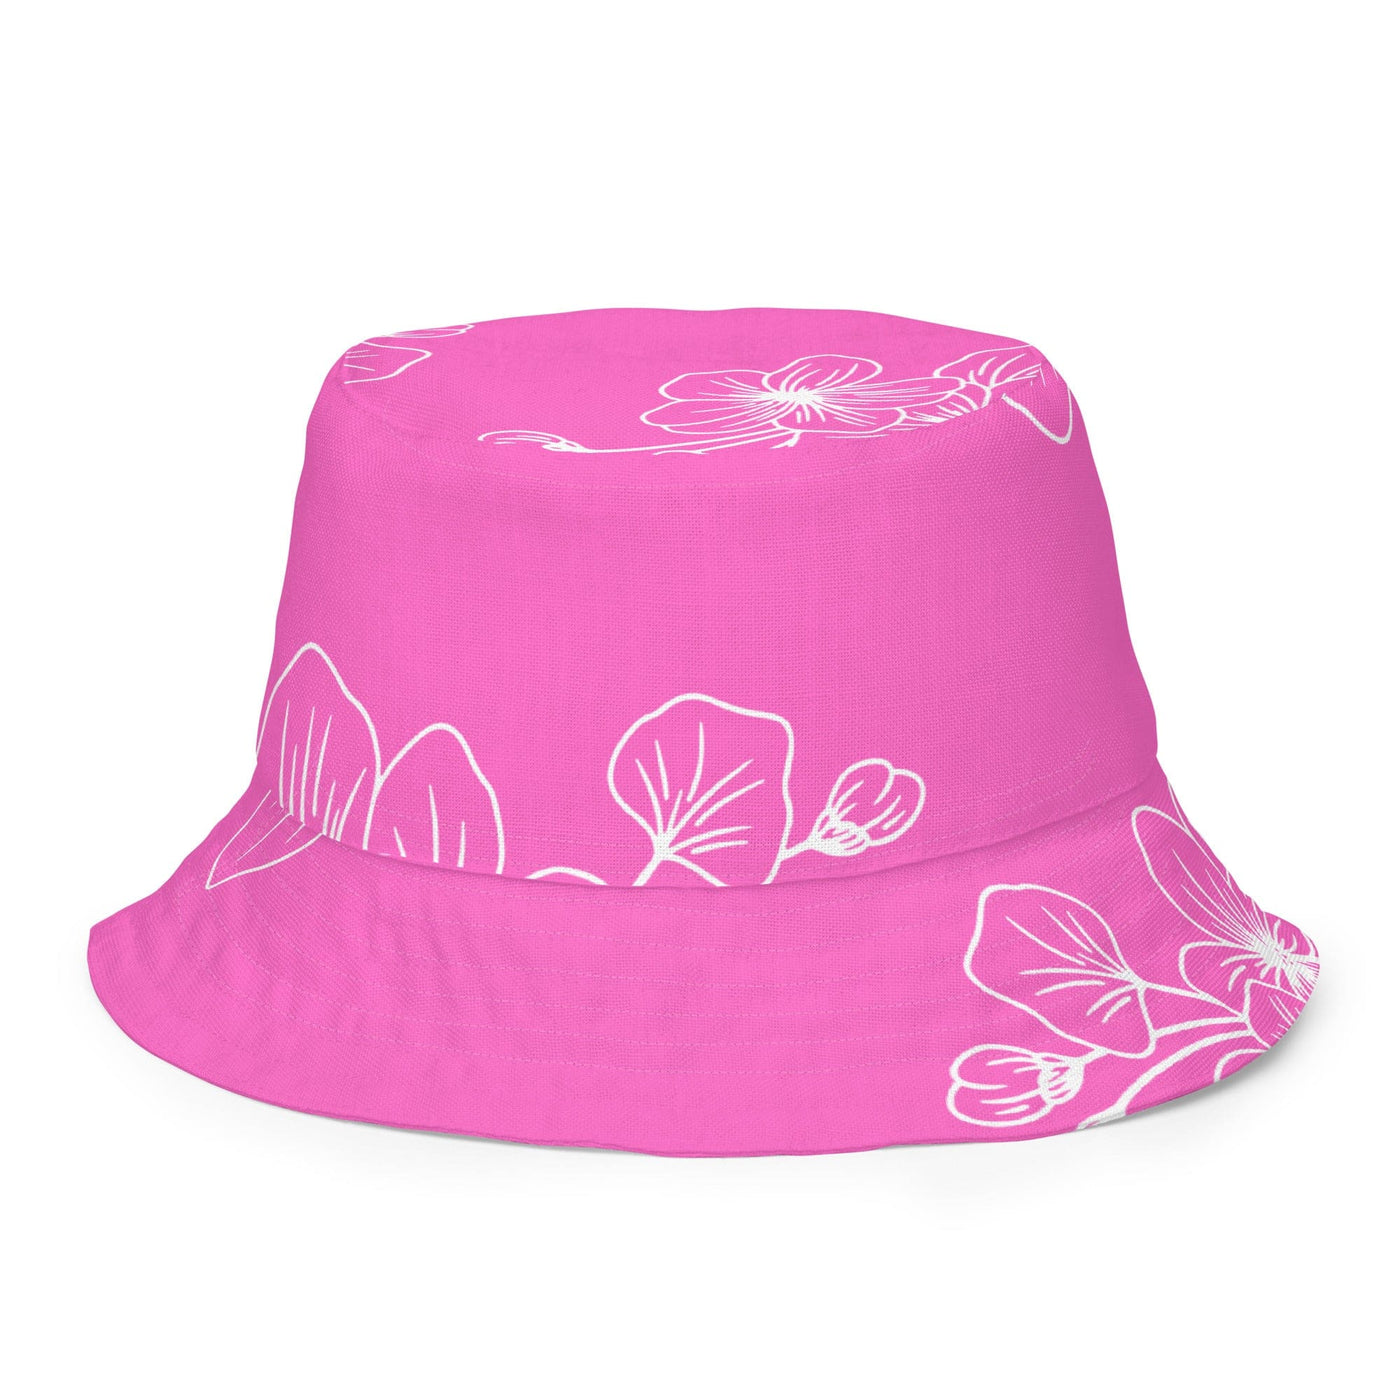 Reversible Bucket Hat Pink Floral - Unisex / Bucket Hats